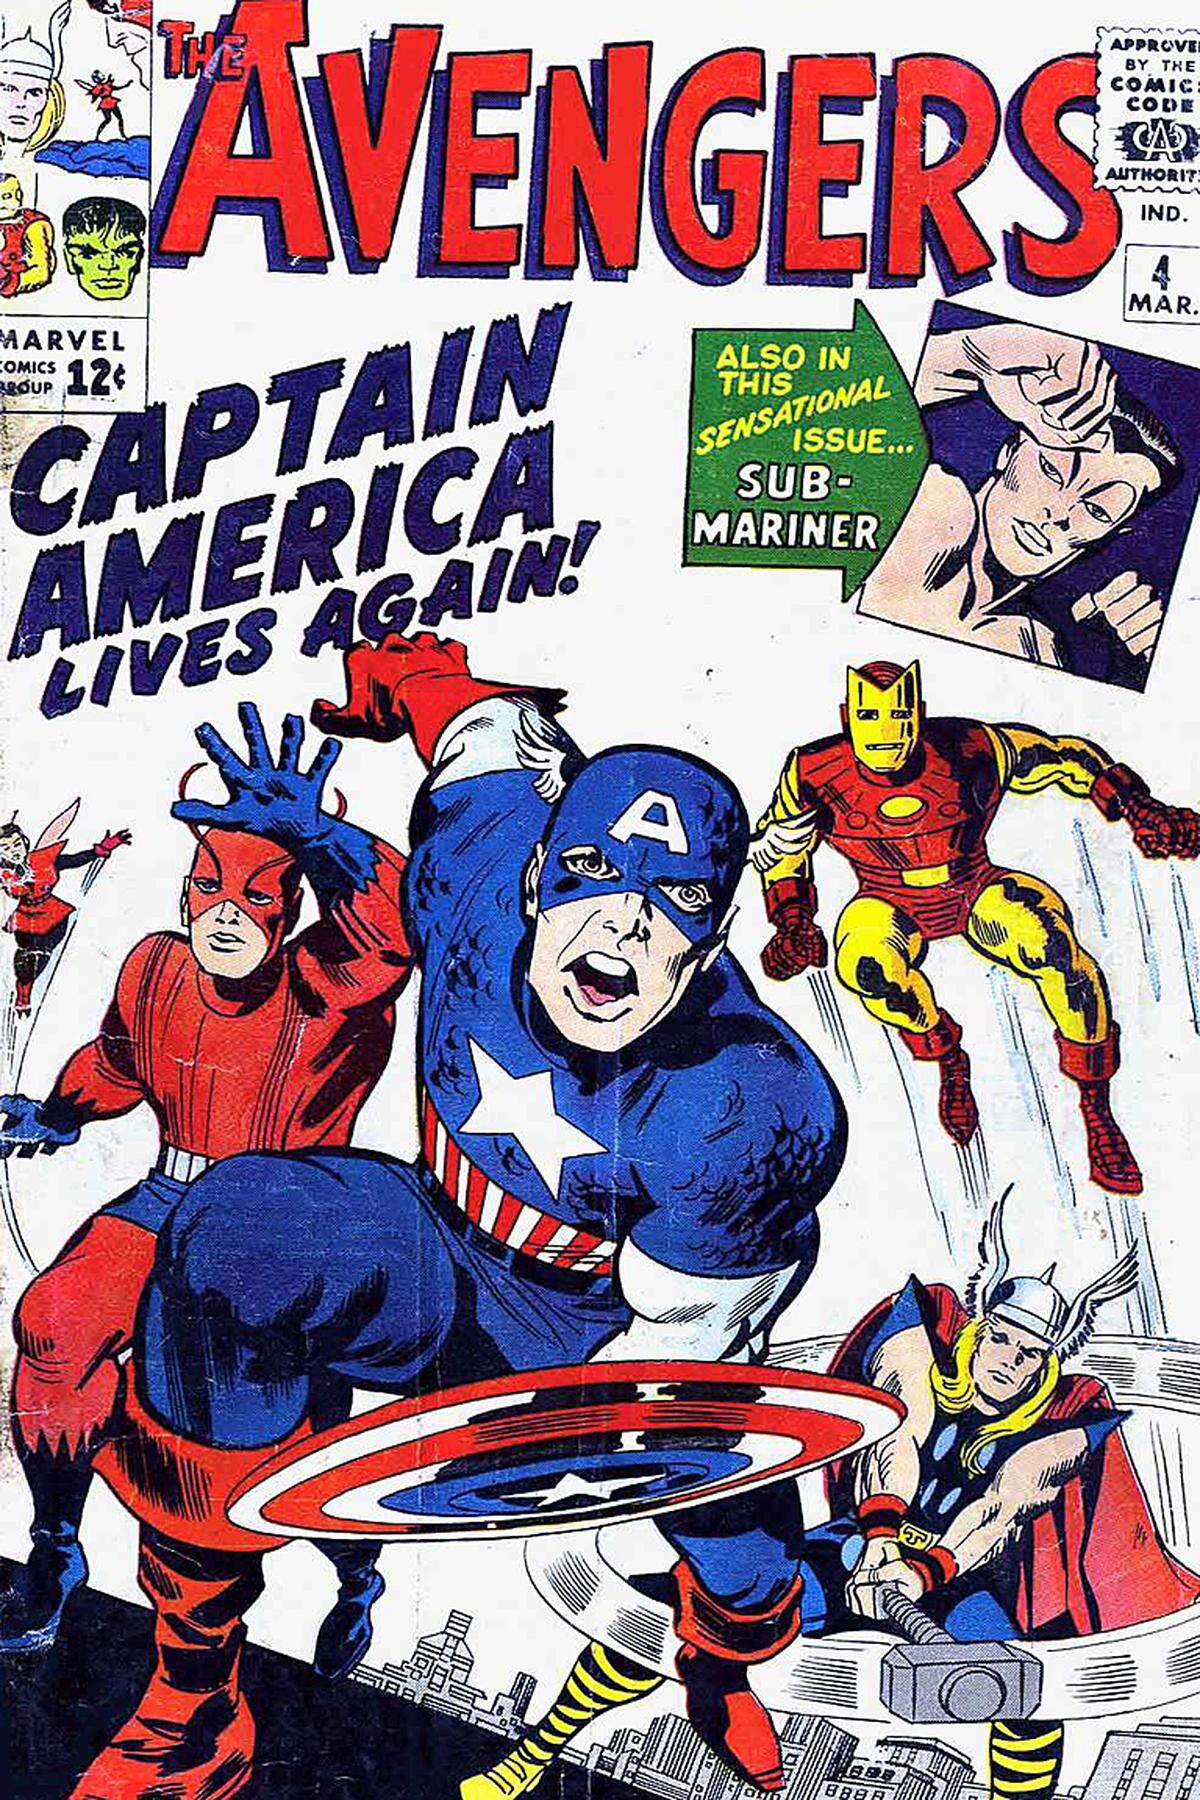 Das originäre Avengers-Team - Hulk, Iron Man, Ant Man und Thor - feierte 1963 in Comicbuchform seine Premiere. Verantwortlich dafür waren Jack Kirby und Stan Lee, der Erfinder von Spiderman. Im deutschsprachigen Raum erschienen die Comics unter dem Titel "Die Rächer".